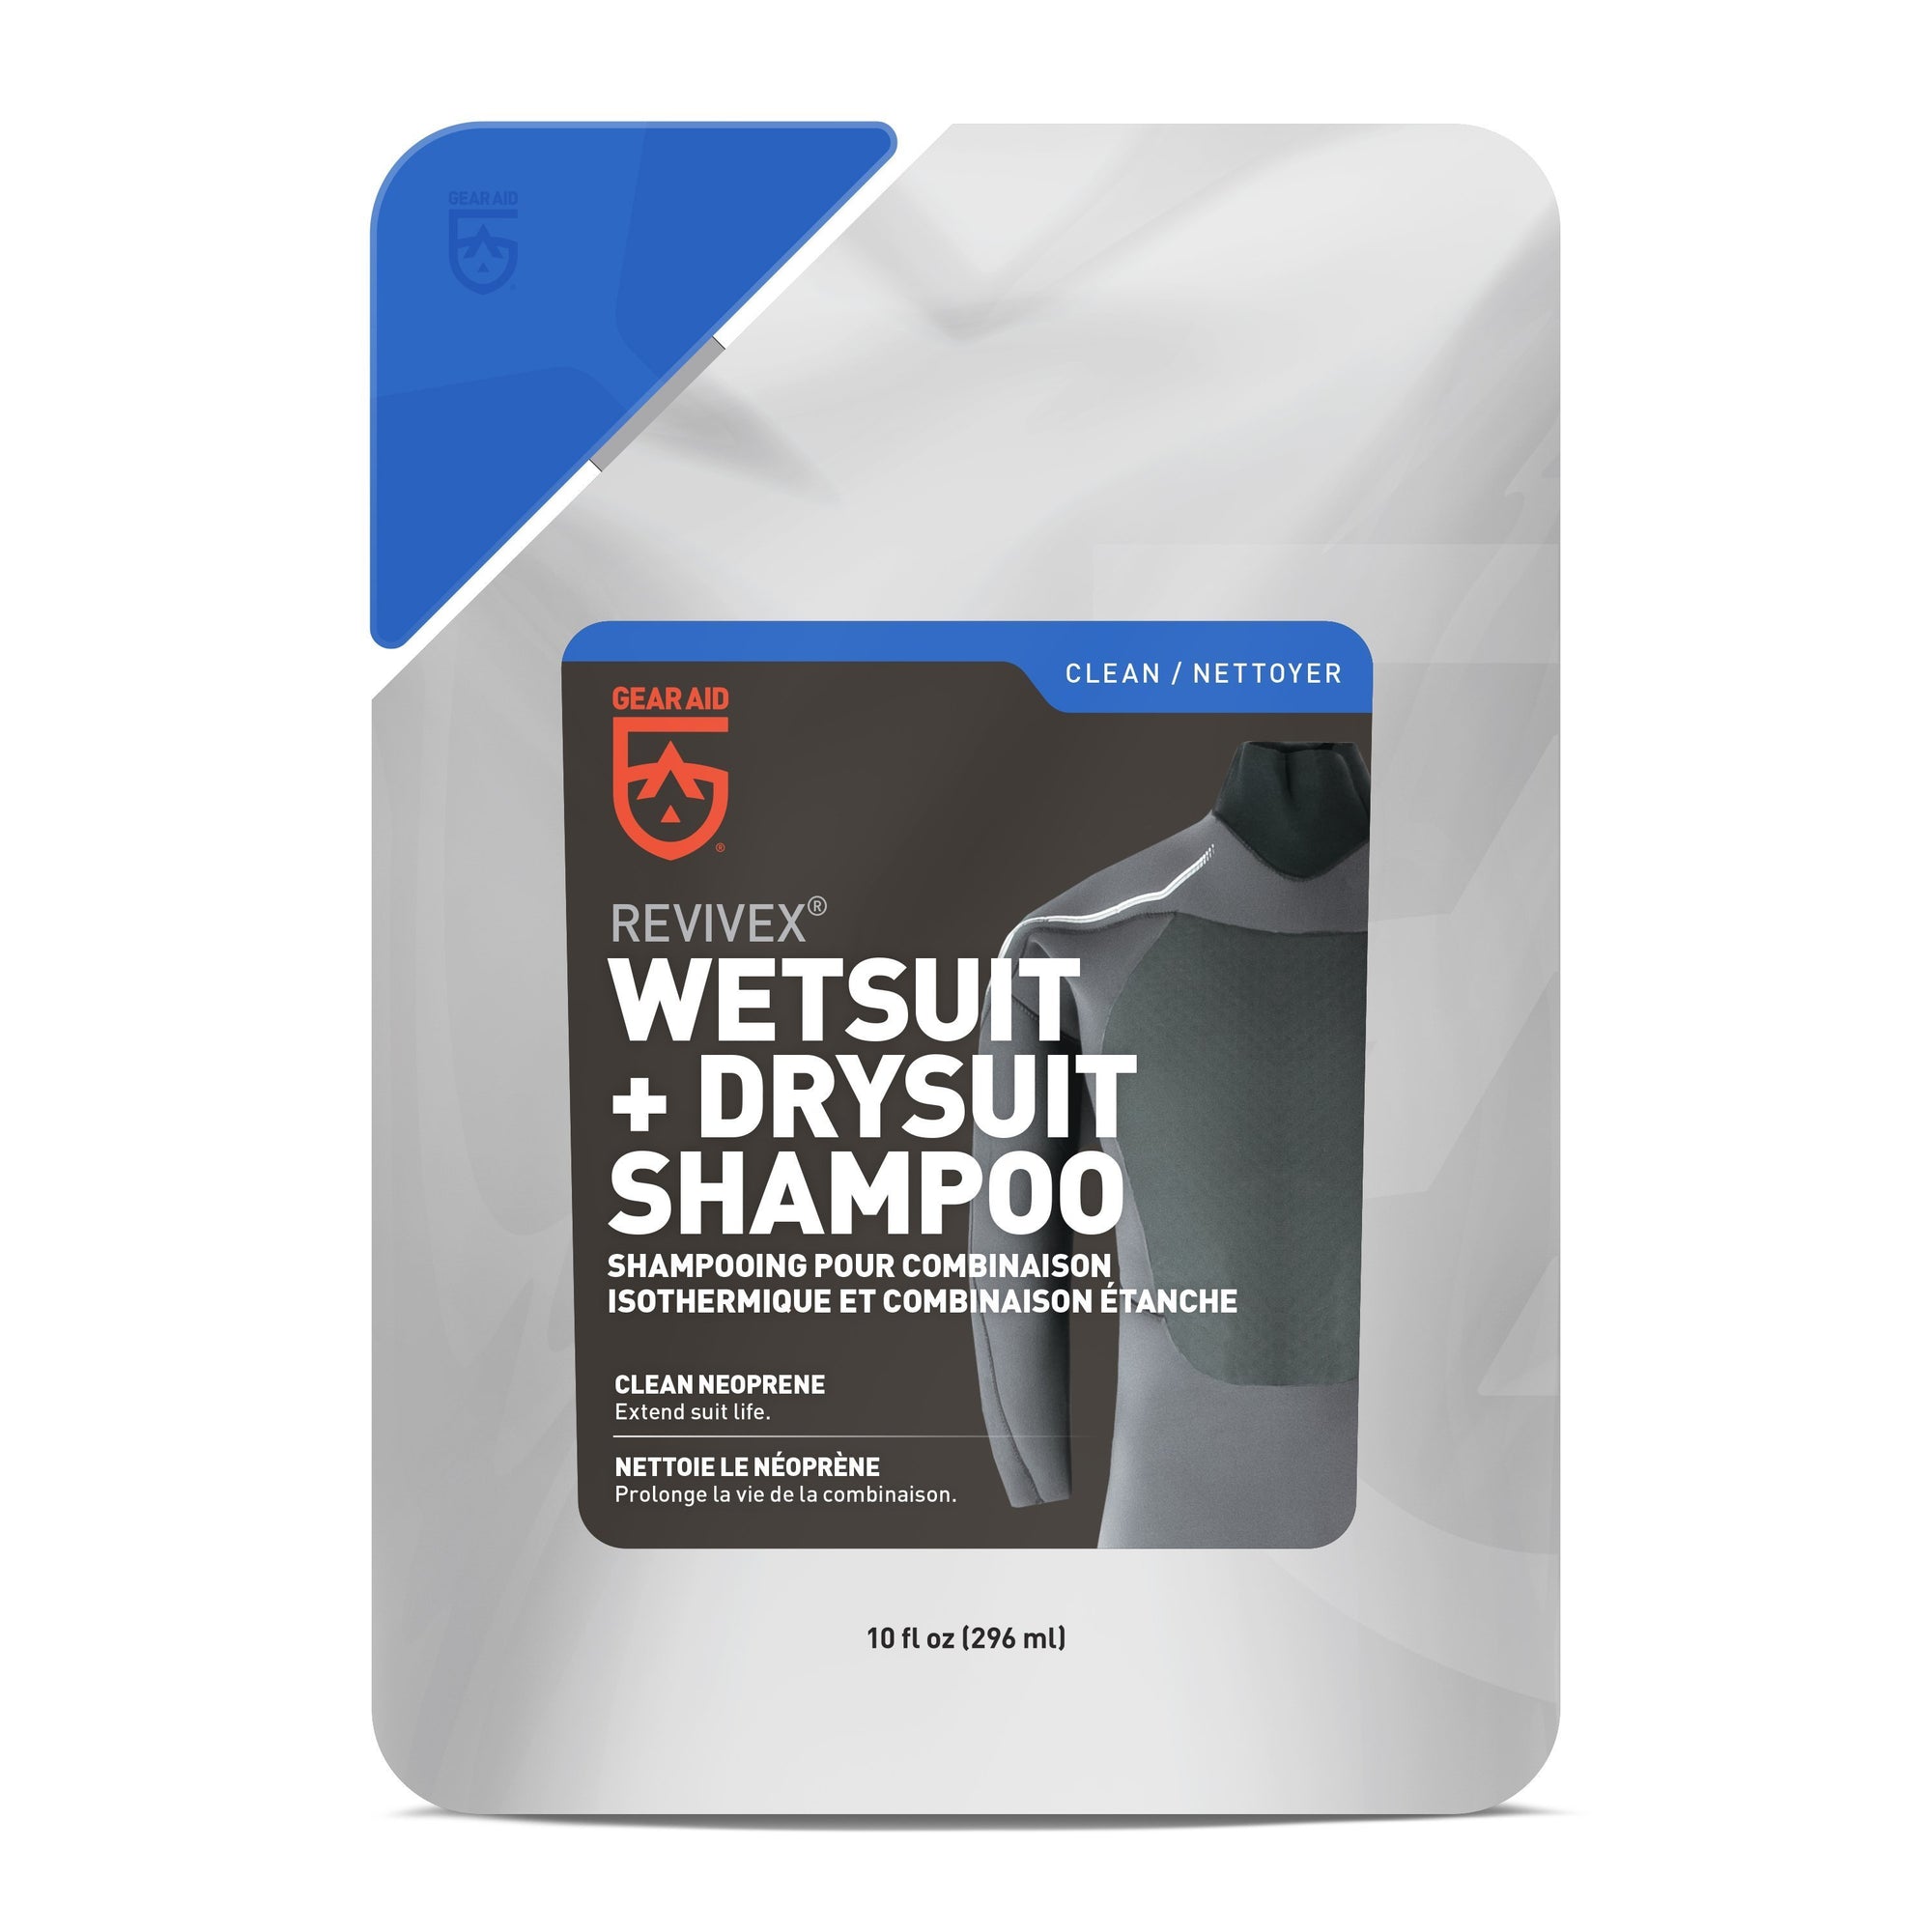 Revivex Wetsuit & Drysuit Shampoo Accessories Gear Aid 